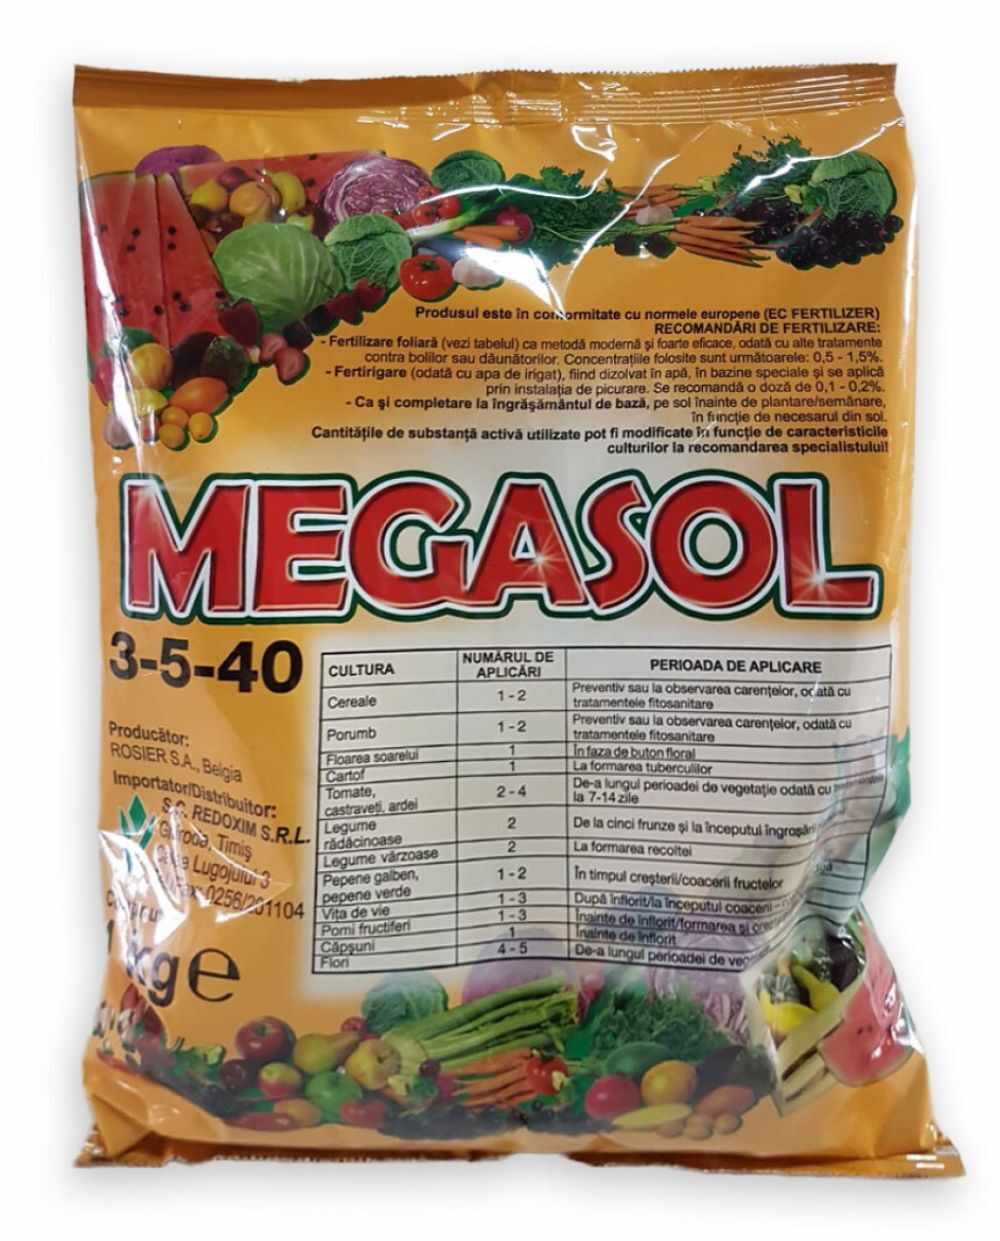 Ingrasamant Megasol 03-05-40+TE 100 gr